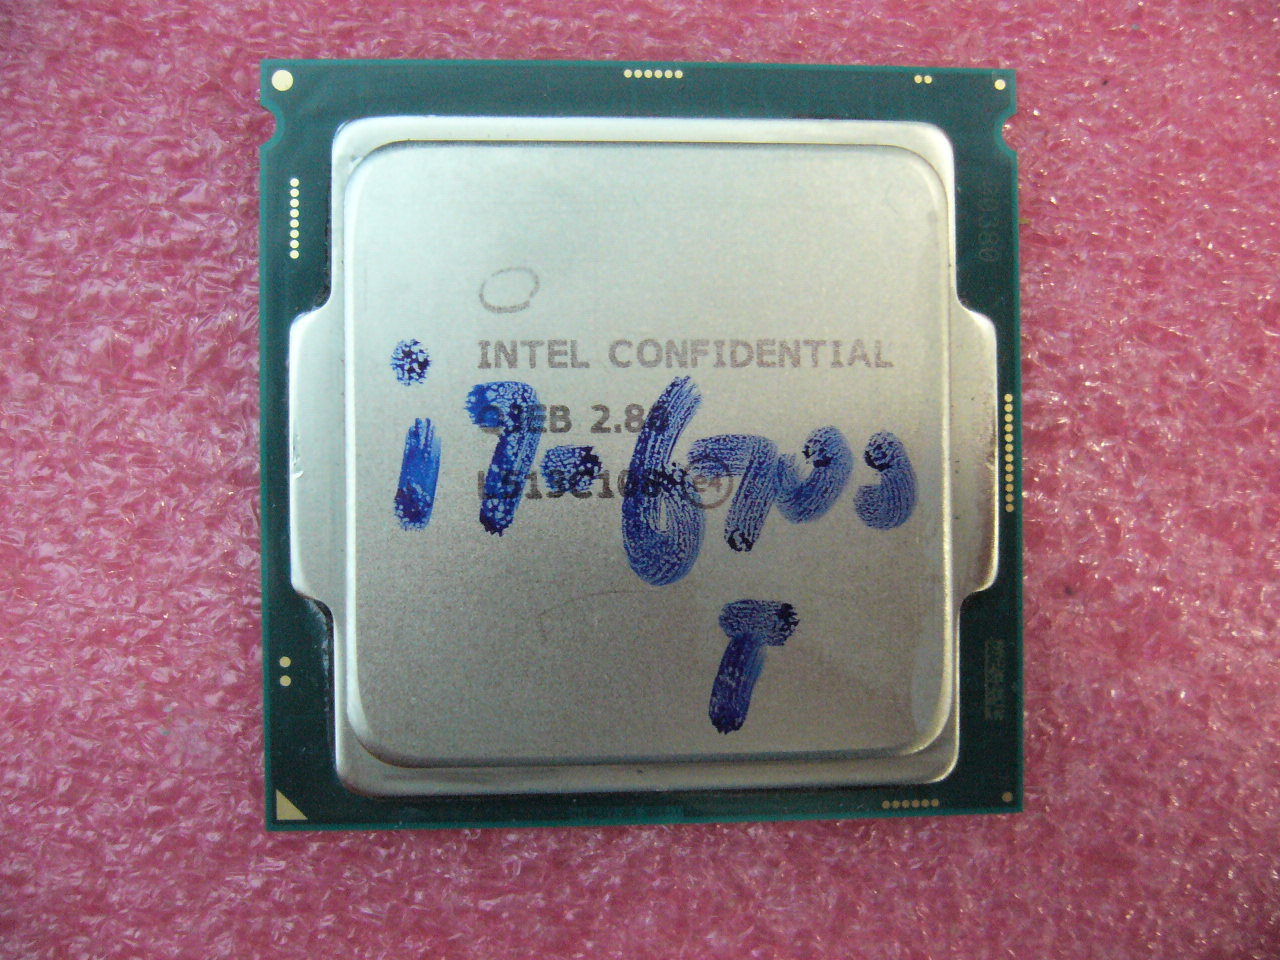 QTY 1x Intel Confidential CPU i7-6700T Quad-Cores 2.8Ghz LGA1151 ES TDP 35W